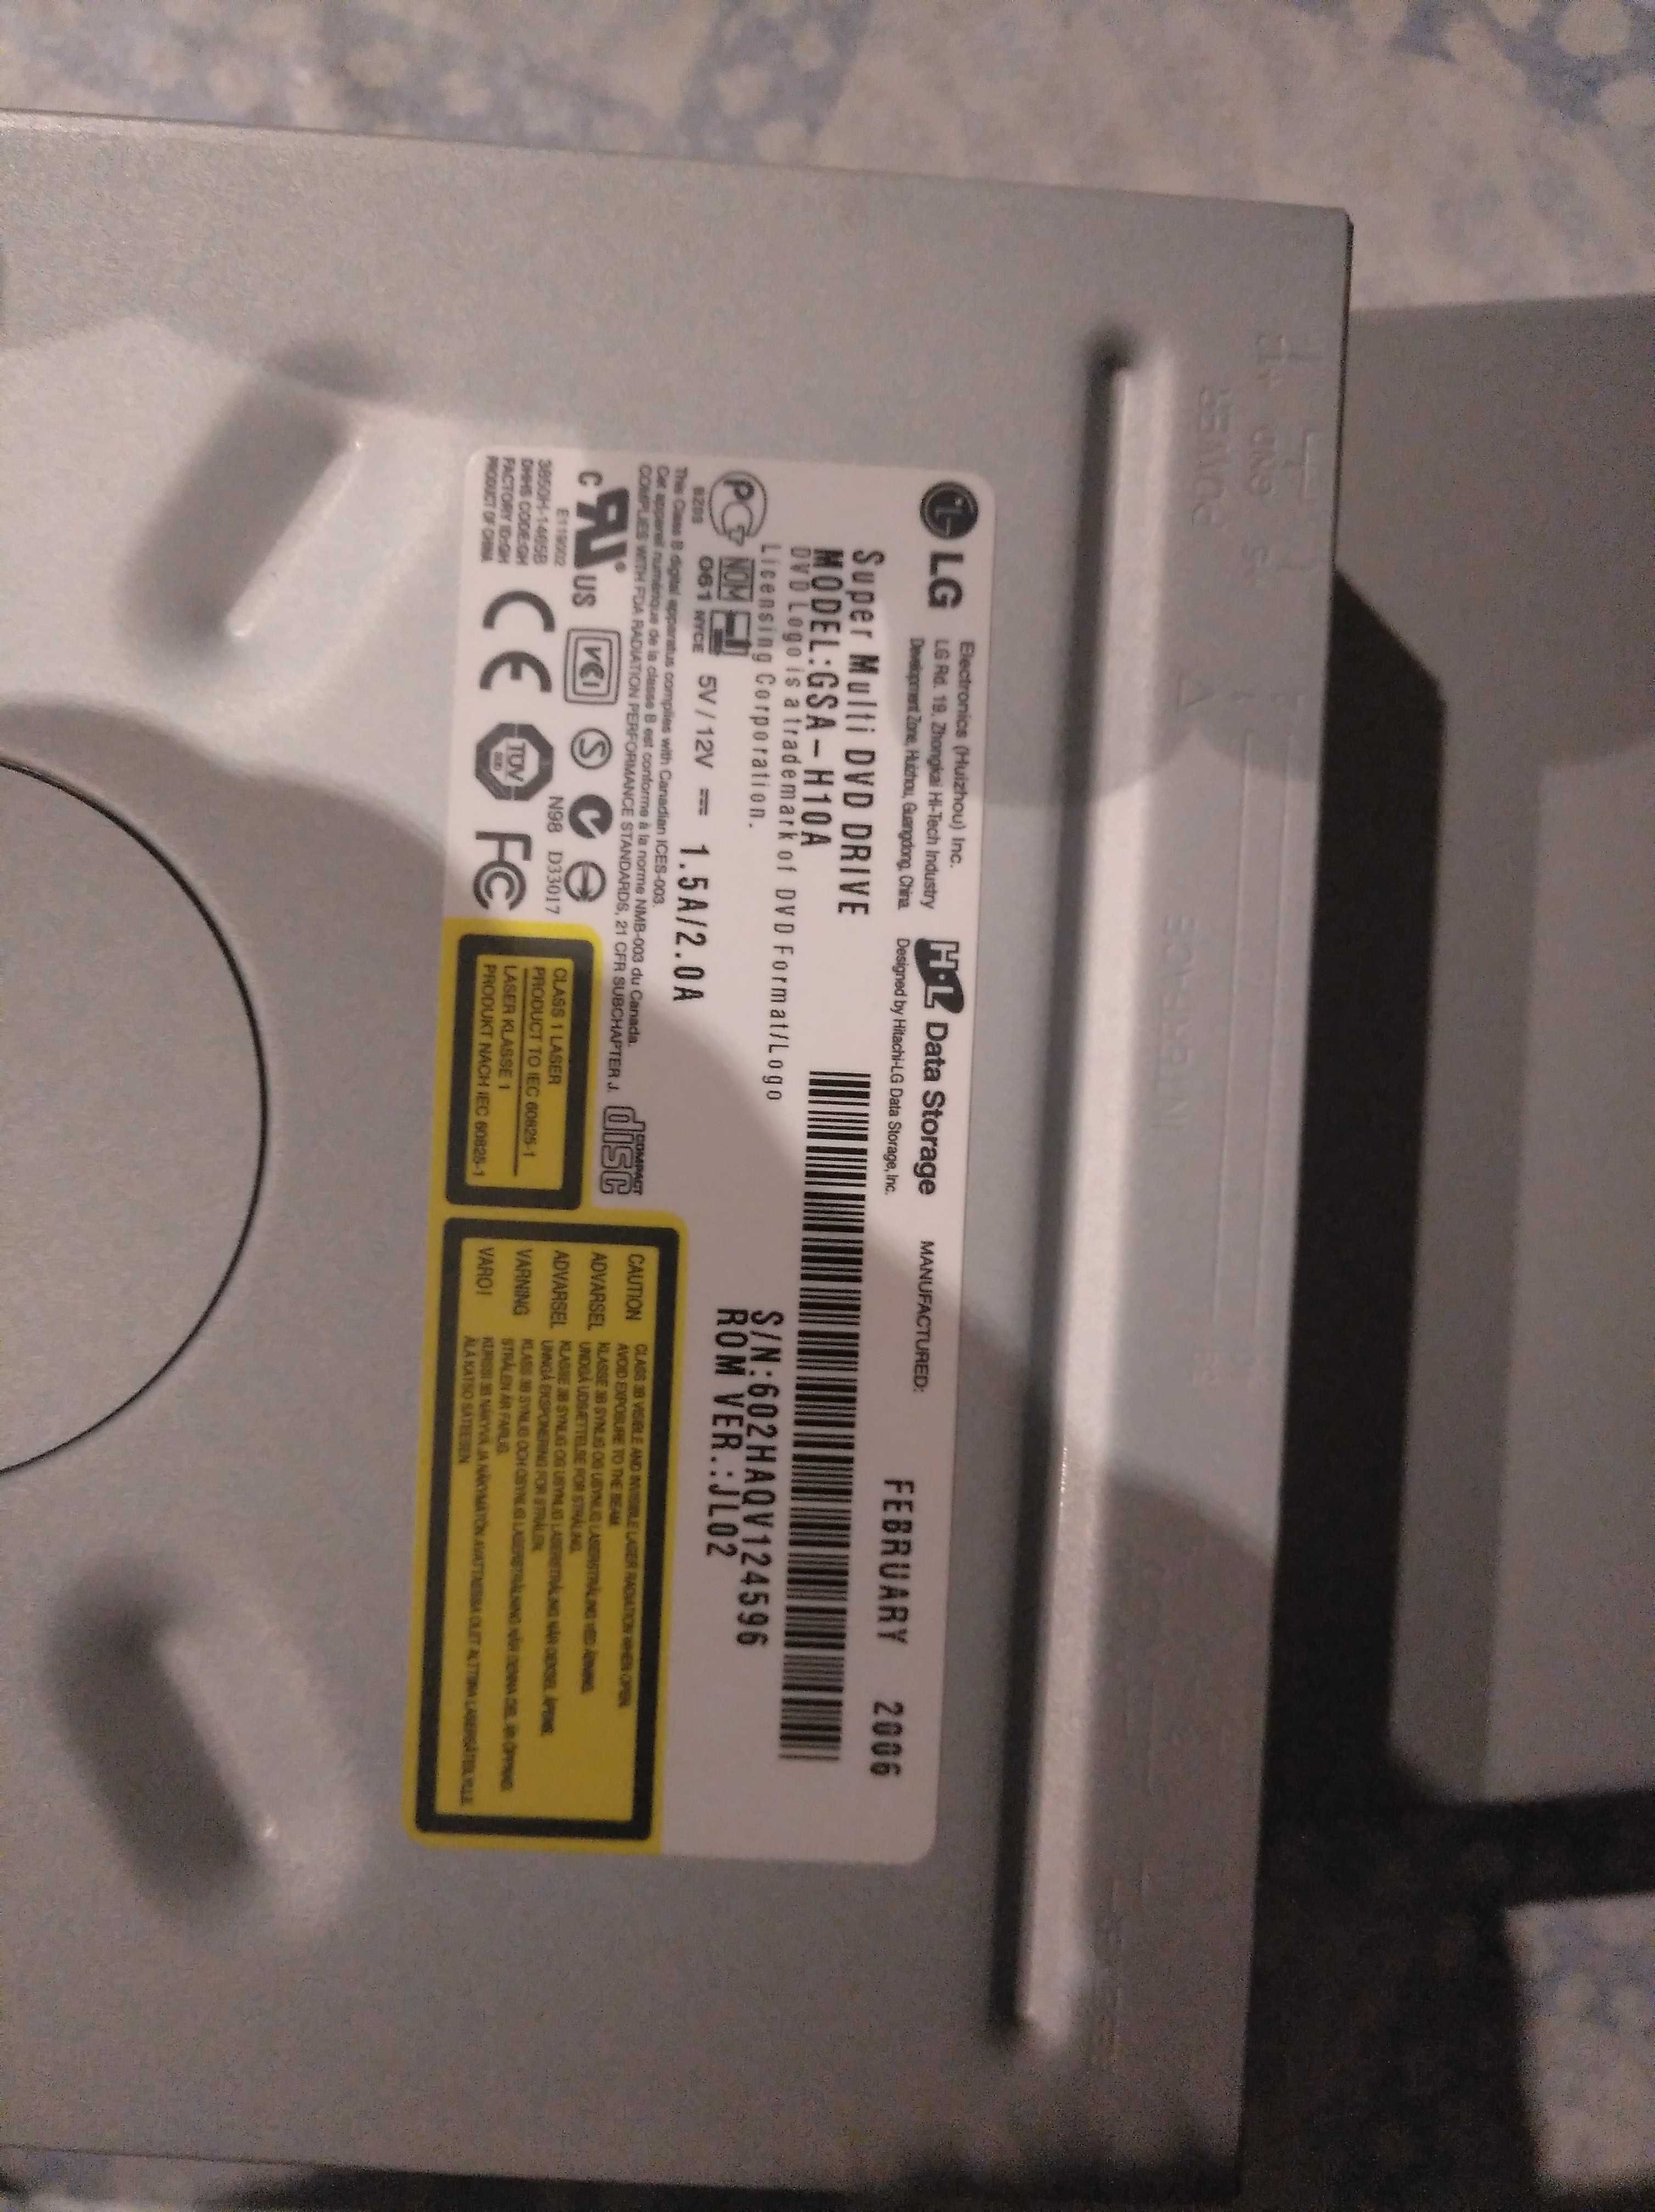 Gravador / leitor DVD LG Modelo GSA-H10A